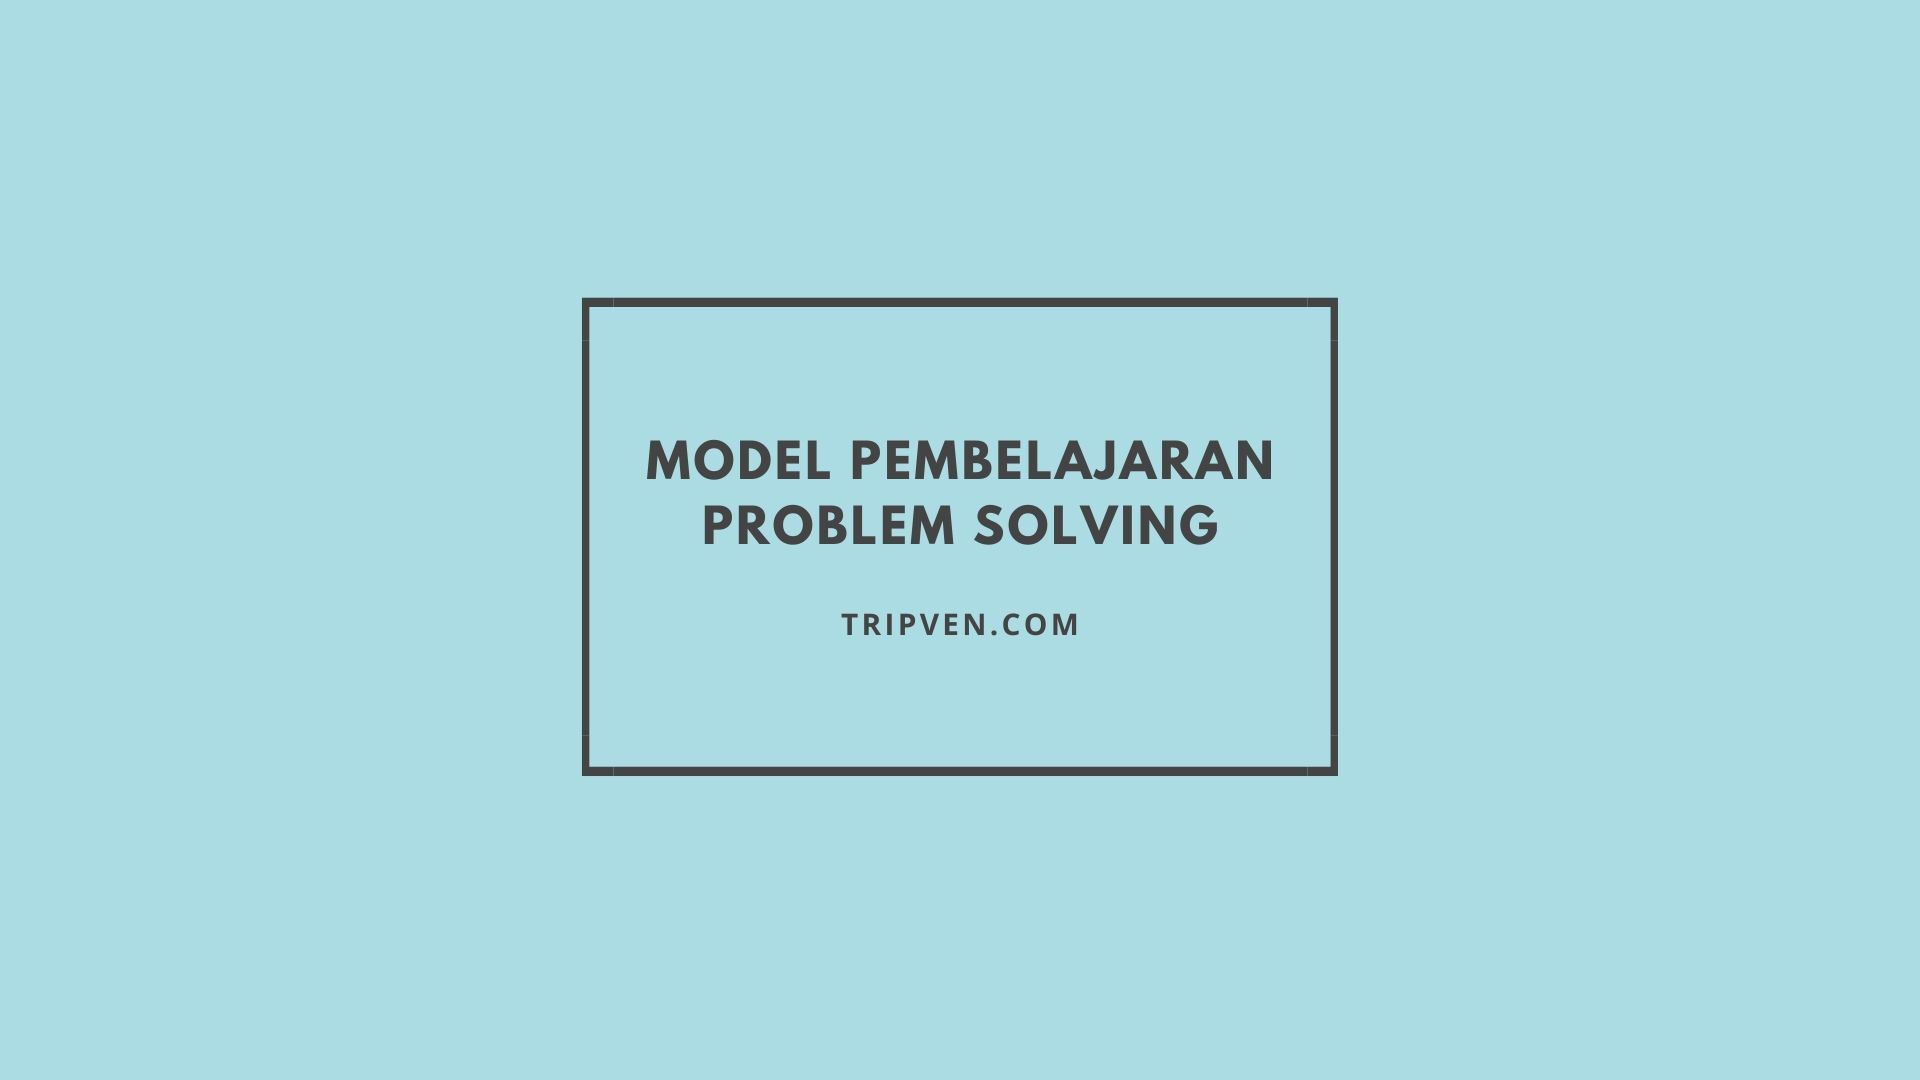 langkah langkah model pembelajaran creative problem solving menurut para ahli